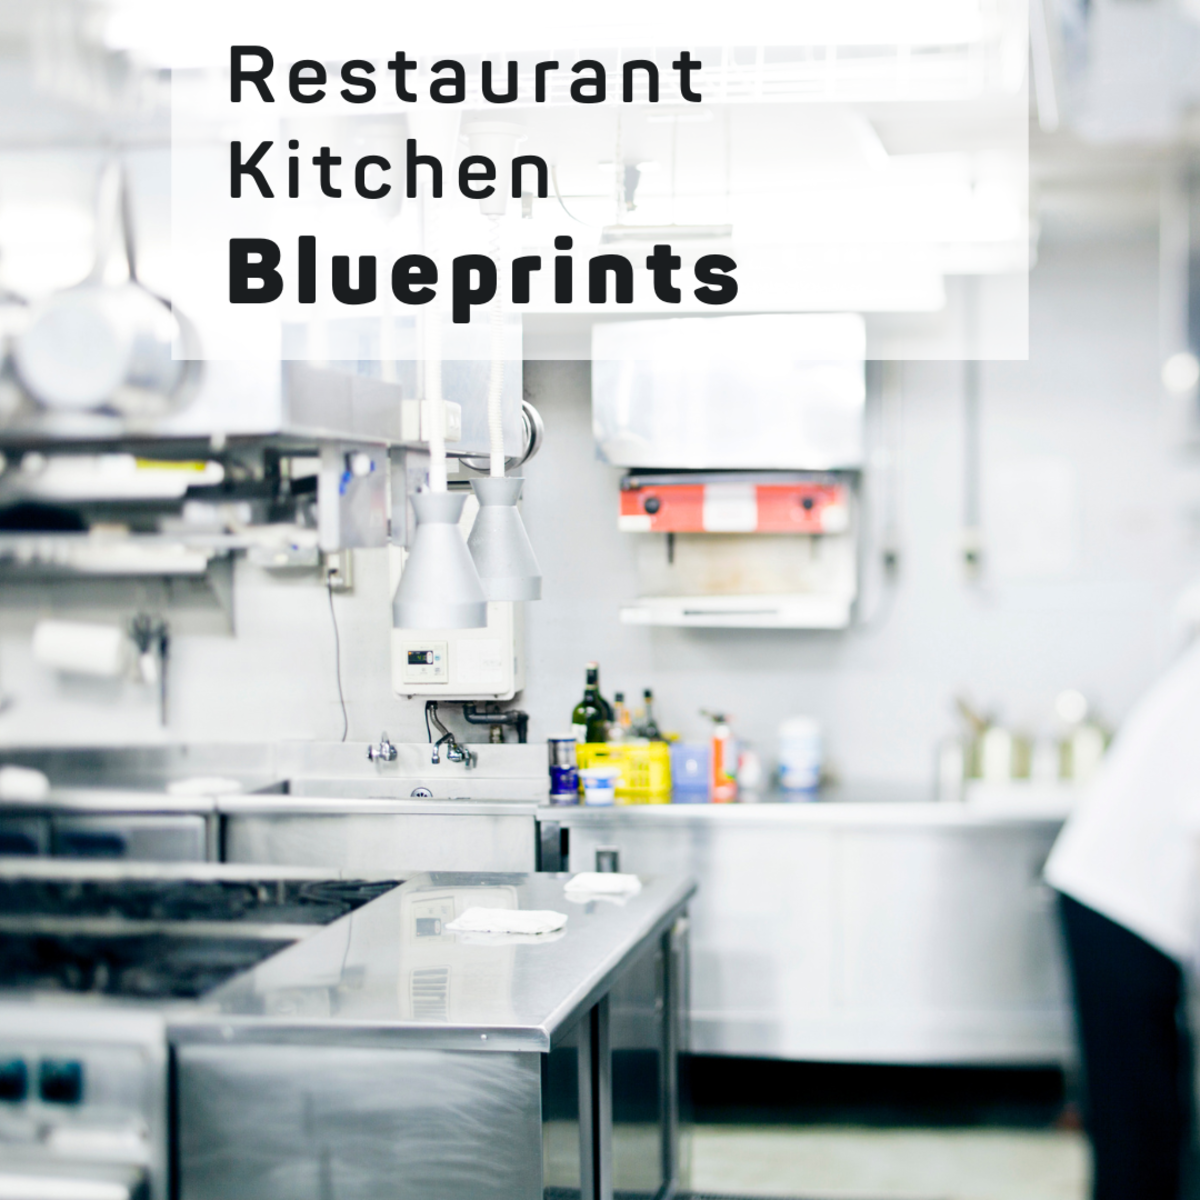 Blueprints of Restaurant Kitchen Designs